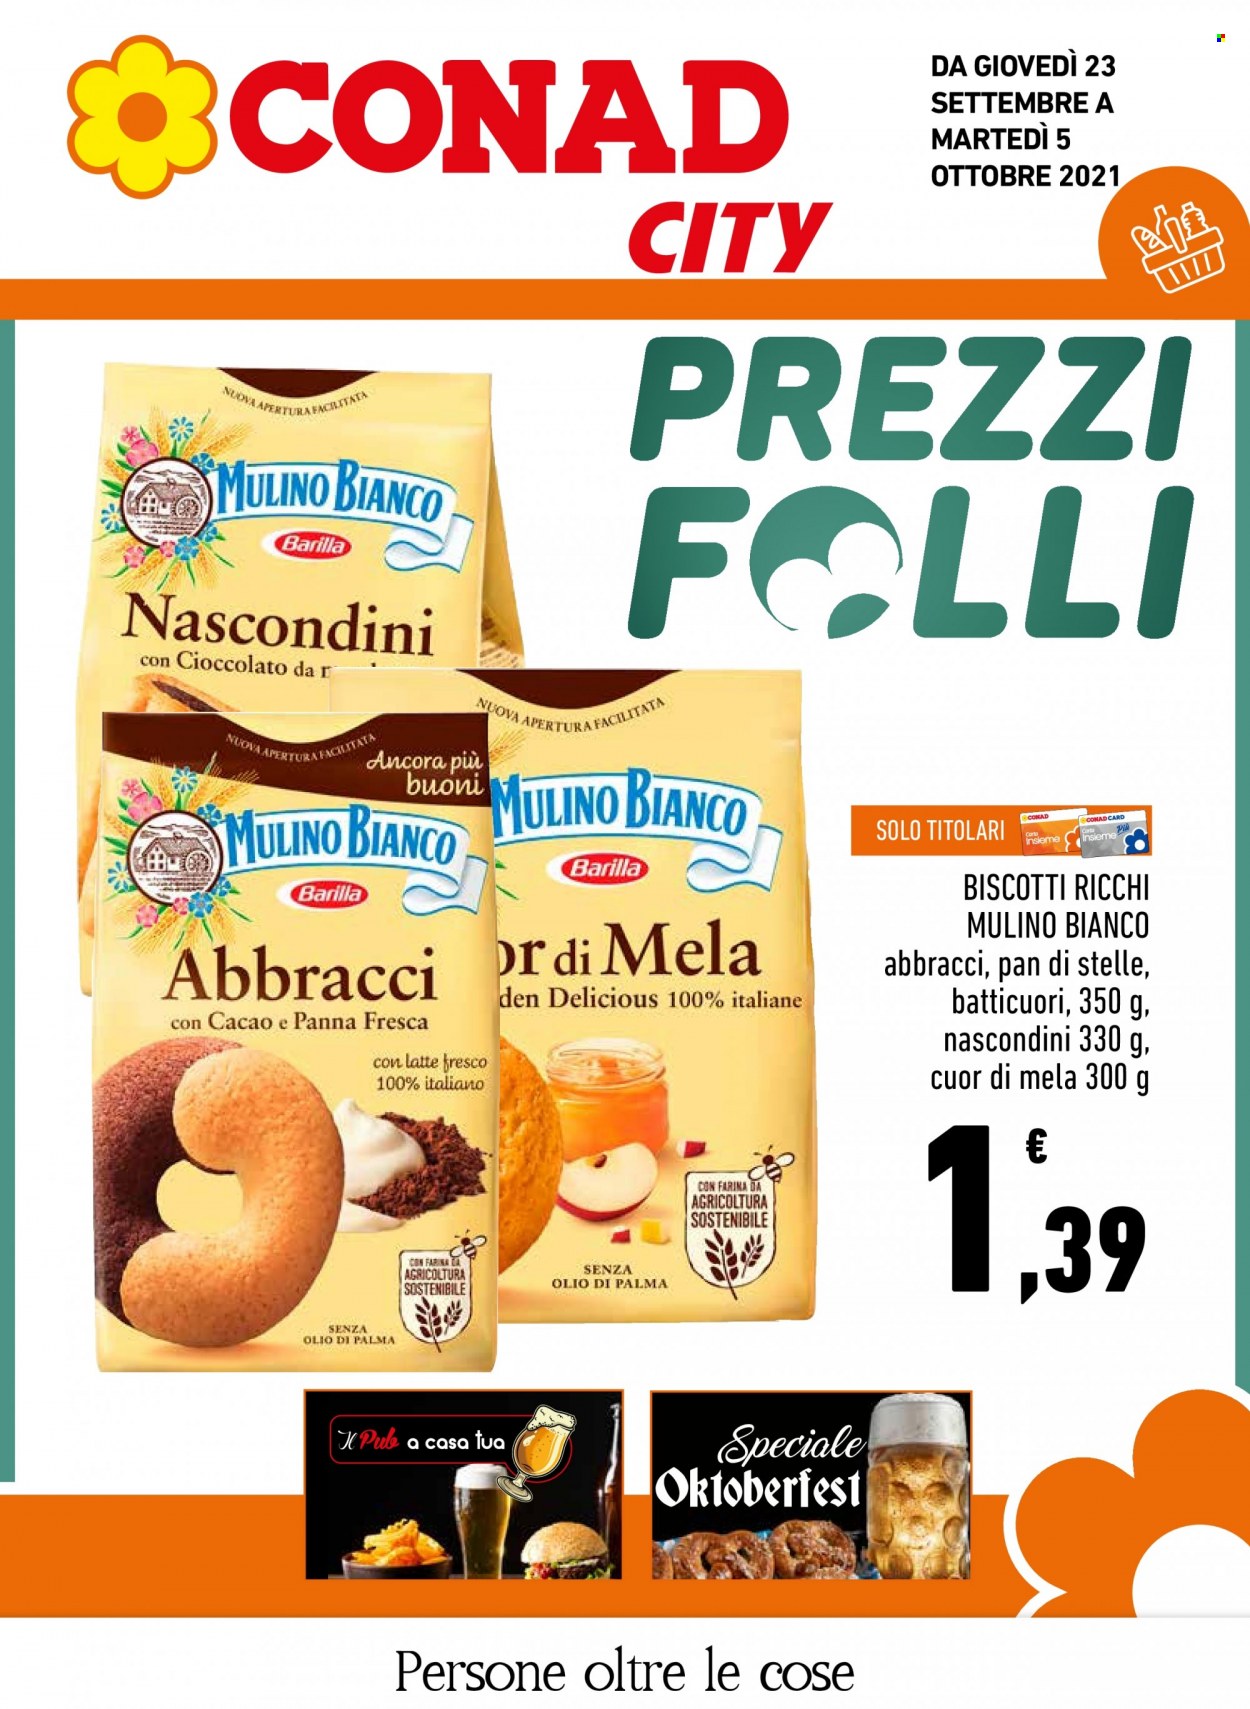 thumbnail - Volantino Conad - 23/9/2021 - 5/10/2021 - Prodotti in offerta - Mulino Bianco, Pan di Stelle, biscotti, Barilla. Pagina 1.